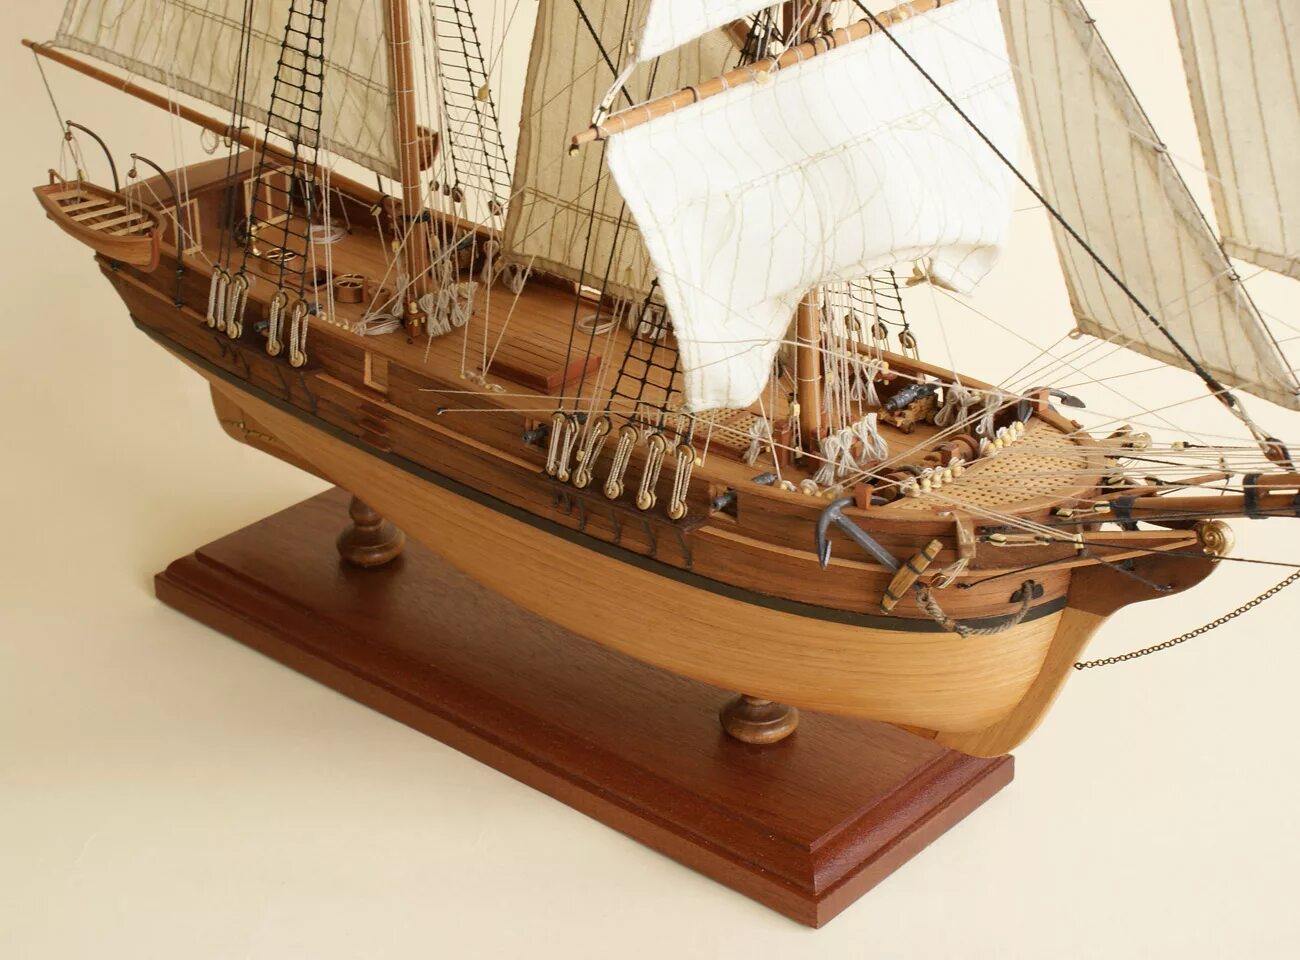 Парусник модель Бенджамин w. Latham 1902. Модель парусника Зейхан. Модели парусных кораблей. Деревянный корабль. Корабль купить в нижнем новгороде